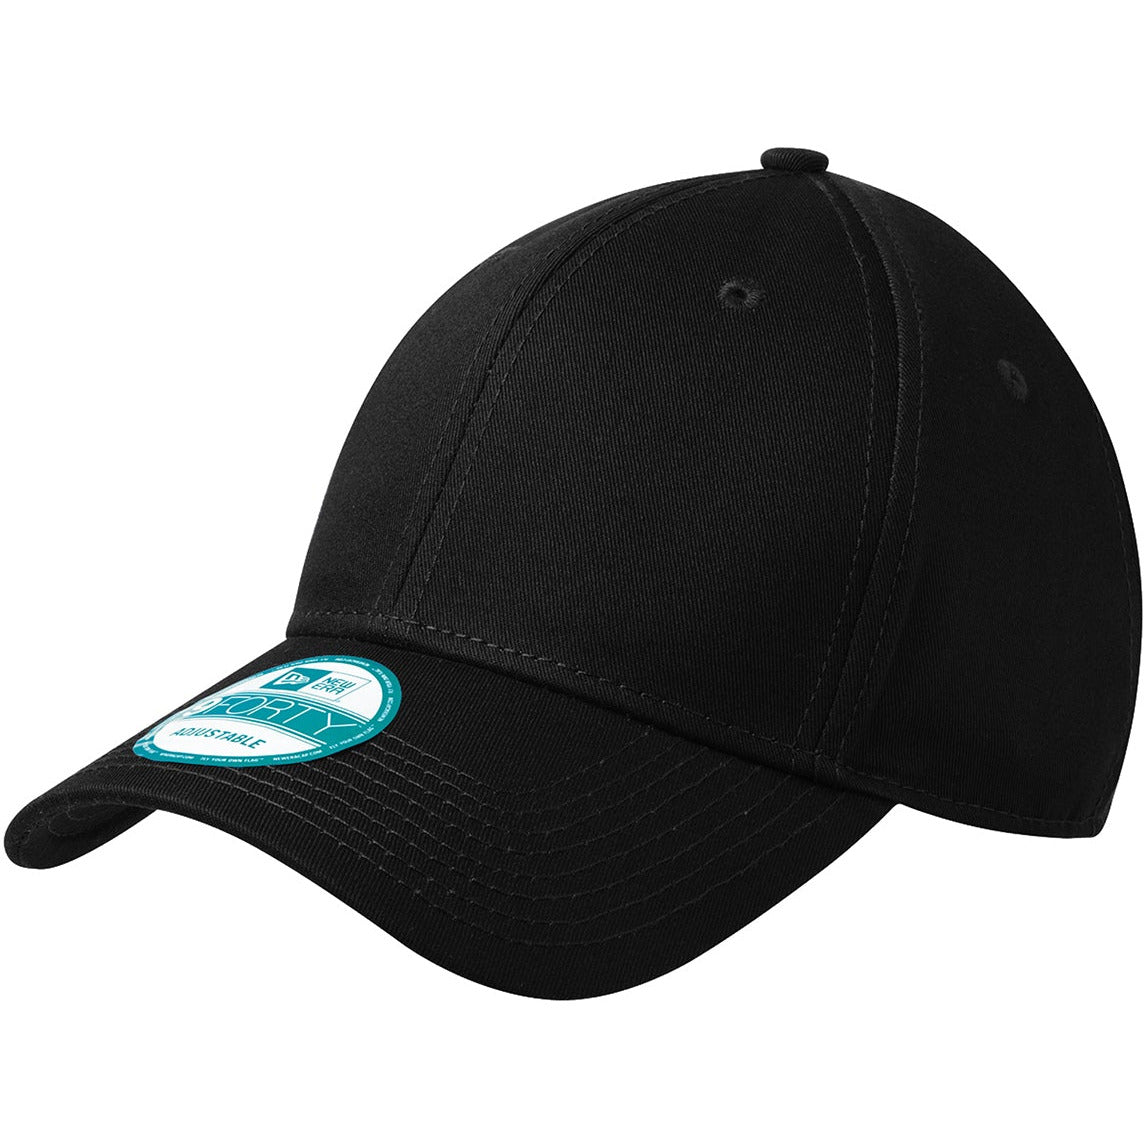 New Era® - Adjustable Structured Cap